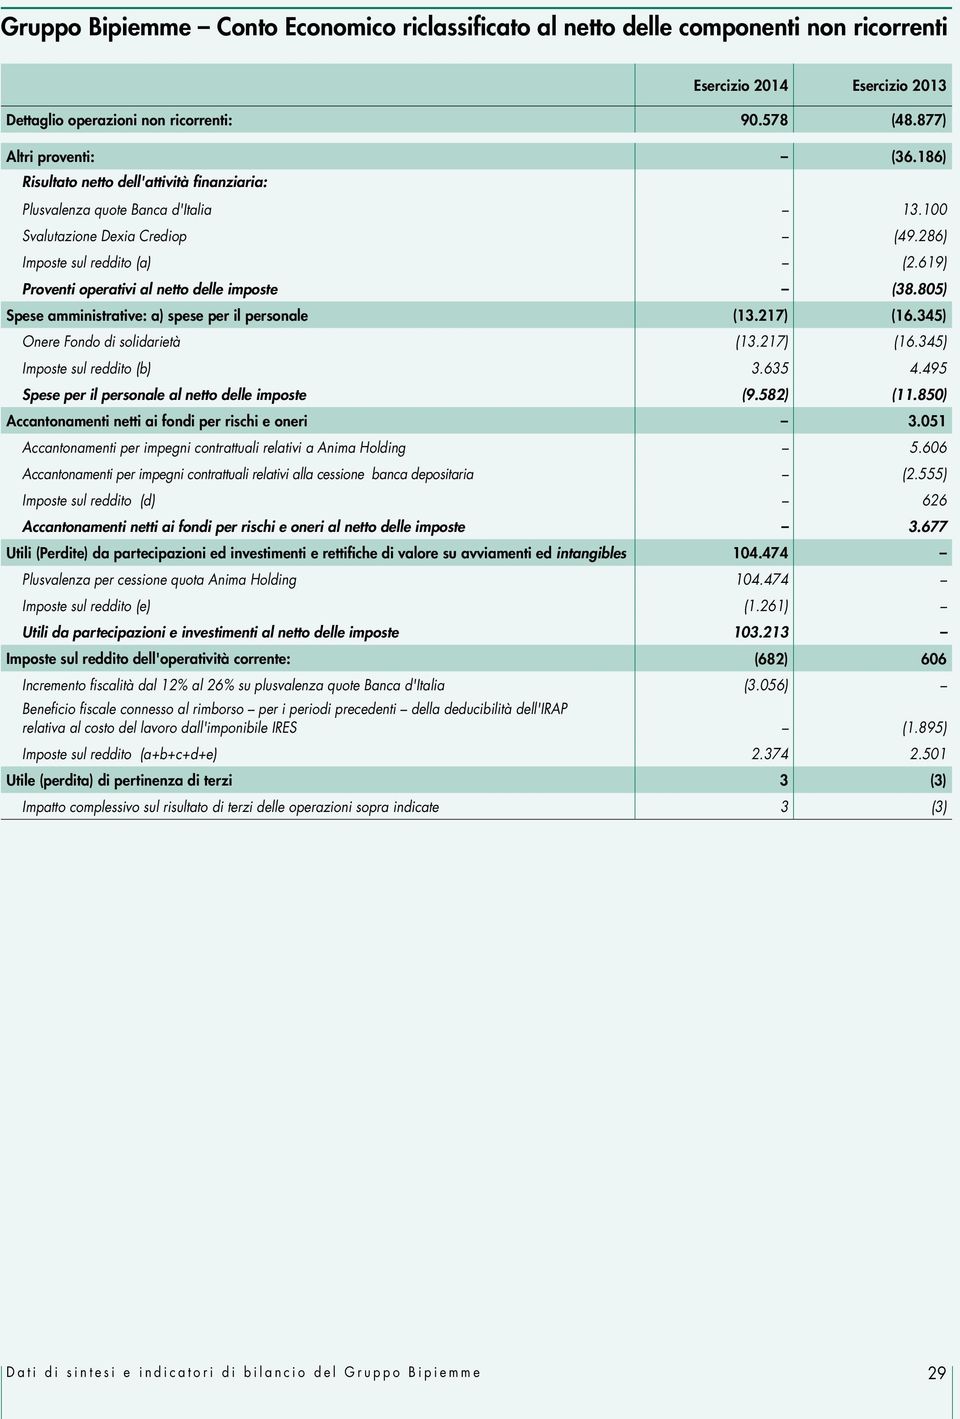 619) Proventi operativi al netto delle imposte (38.805) Spese amministrative: a) spese per il personale (13.217) (16.345) Onere Fondo di solidarietà (13.217) (16.345) Imposte sul reddito (b) 3.635 4.